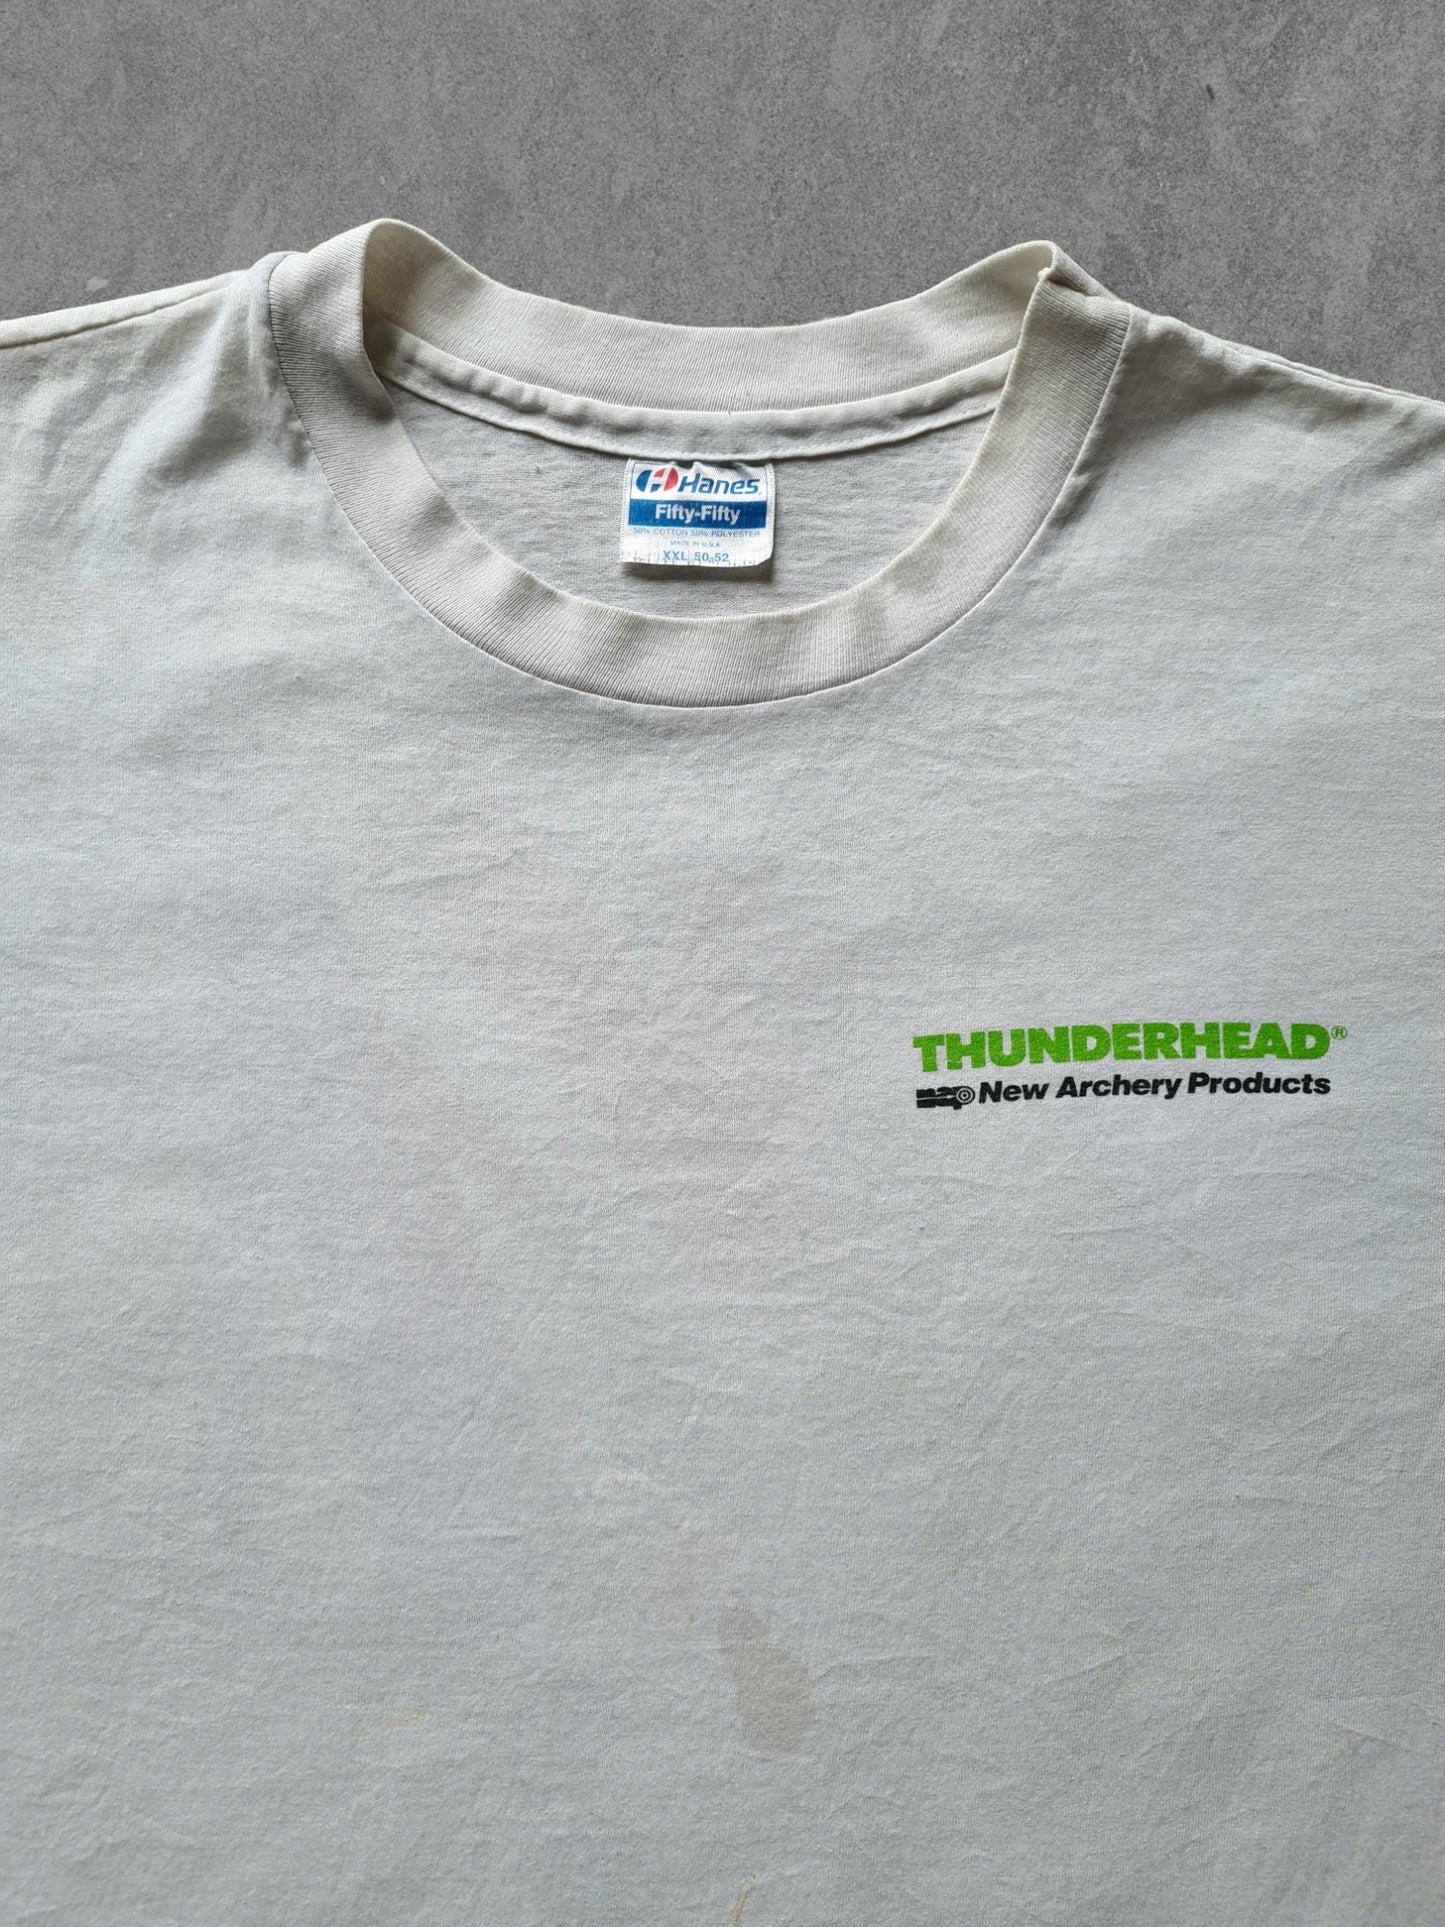 De vintage winkel met tweedehands kleding uit de thrift | 1989 HANES ''THUNDERHEAD'' T-SHIRT [XL] T-SHIRT